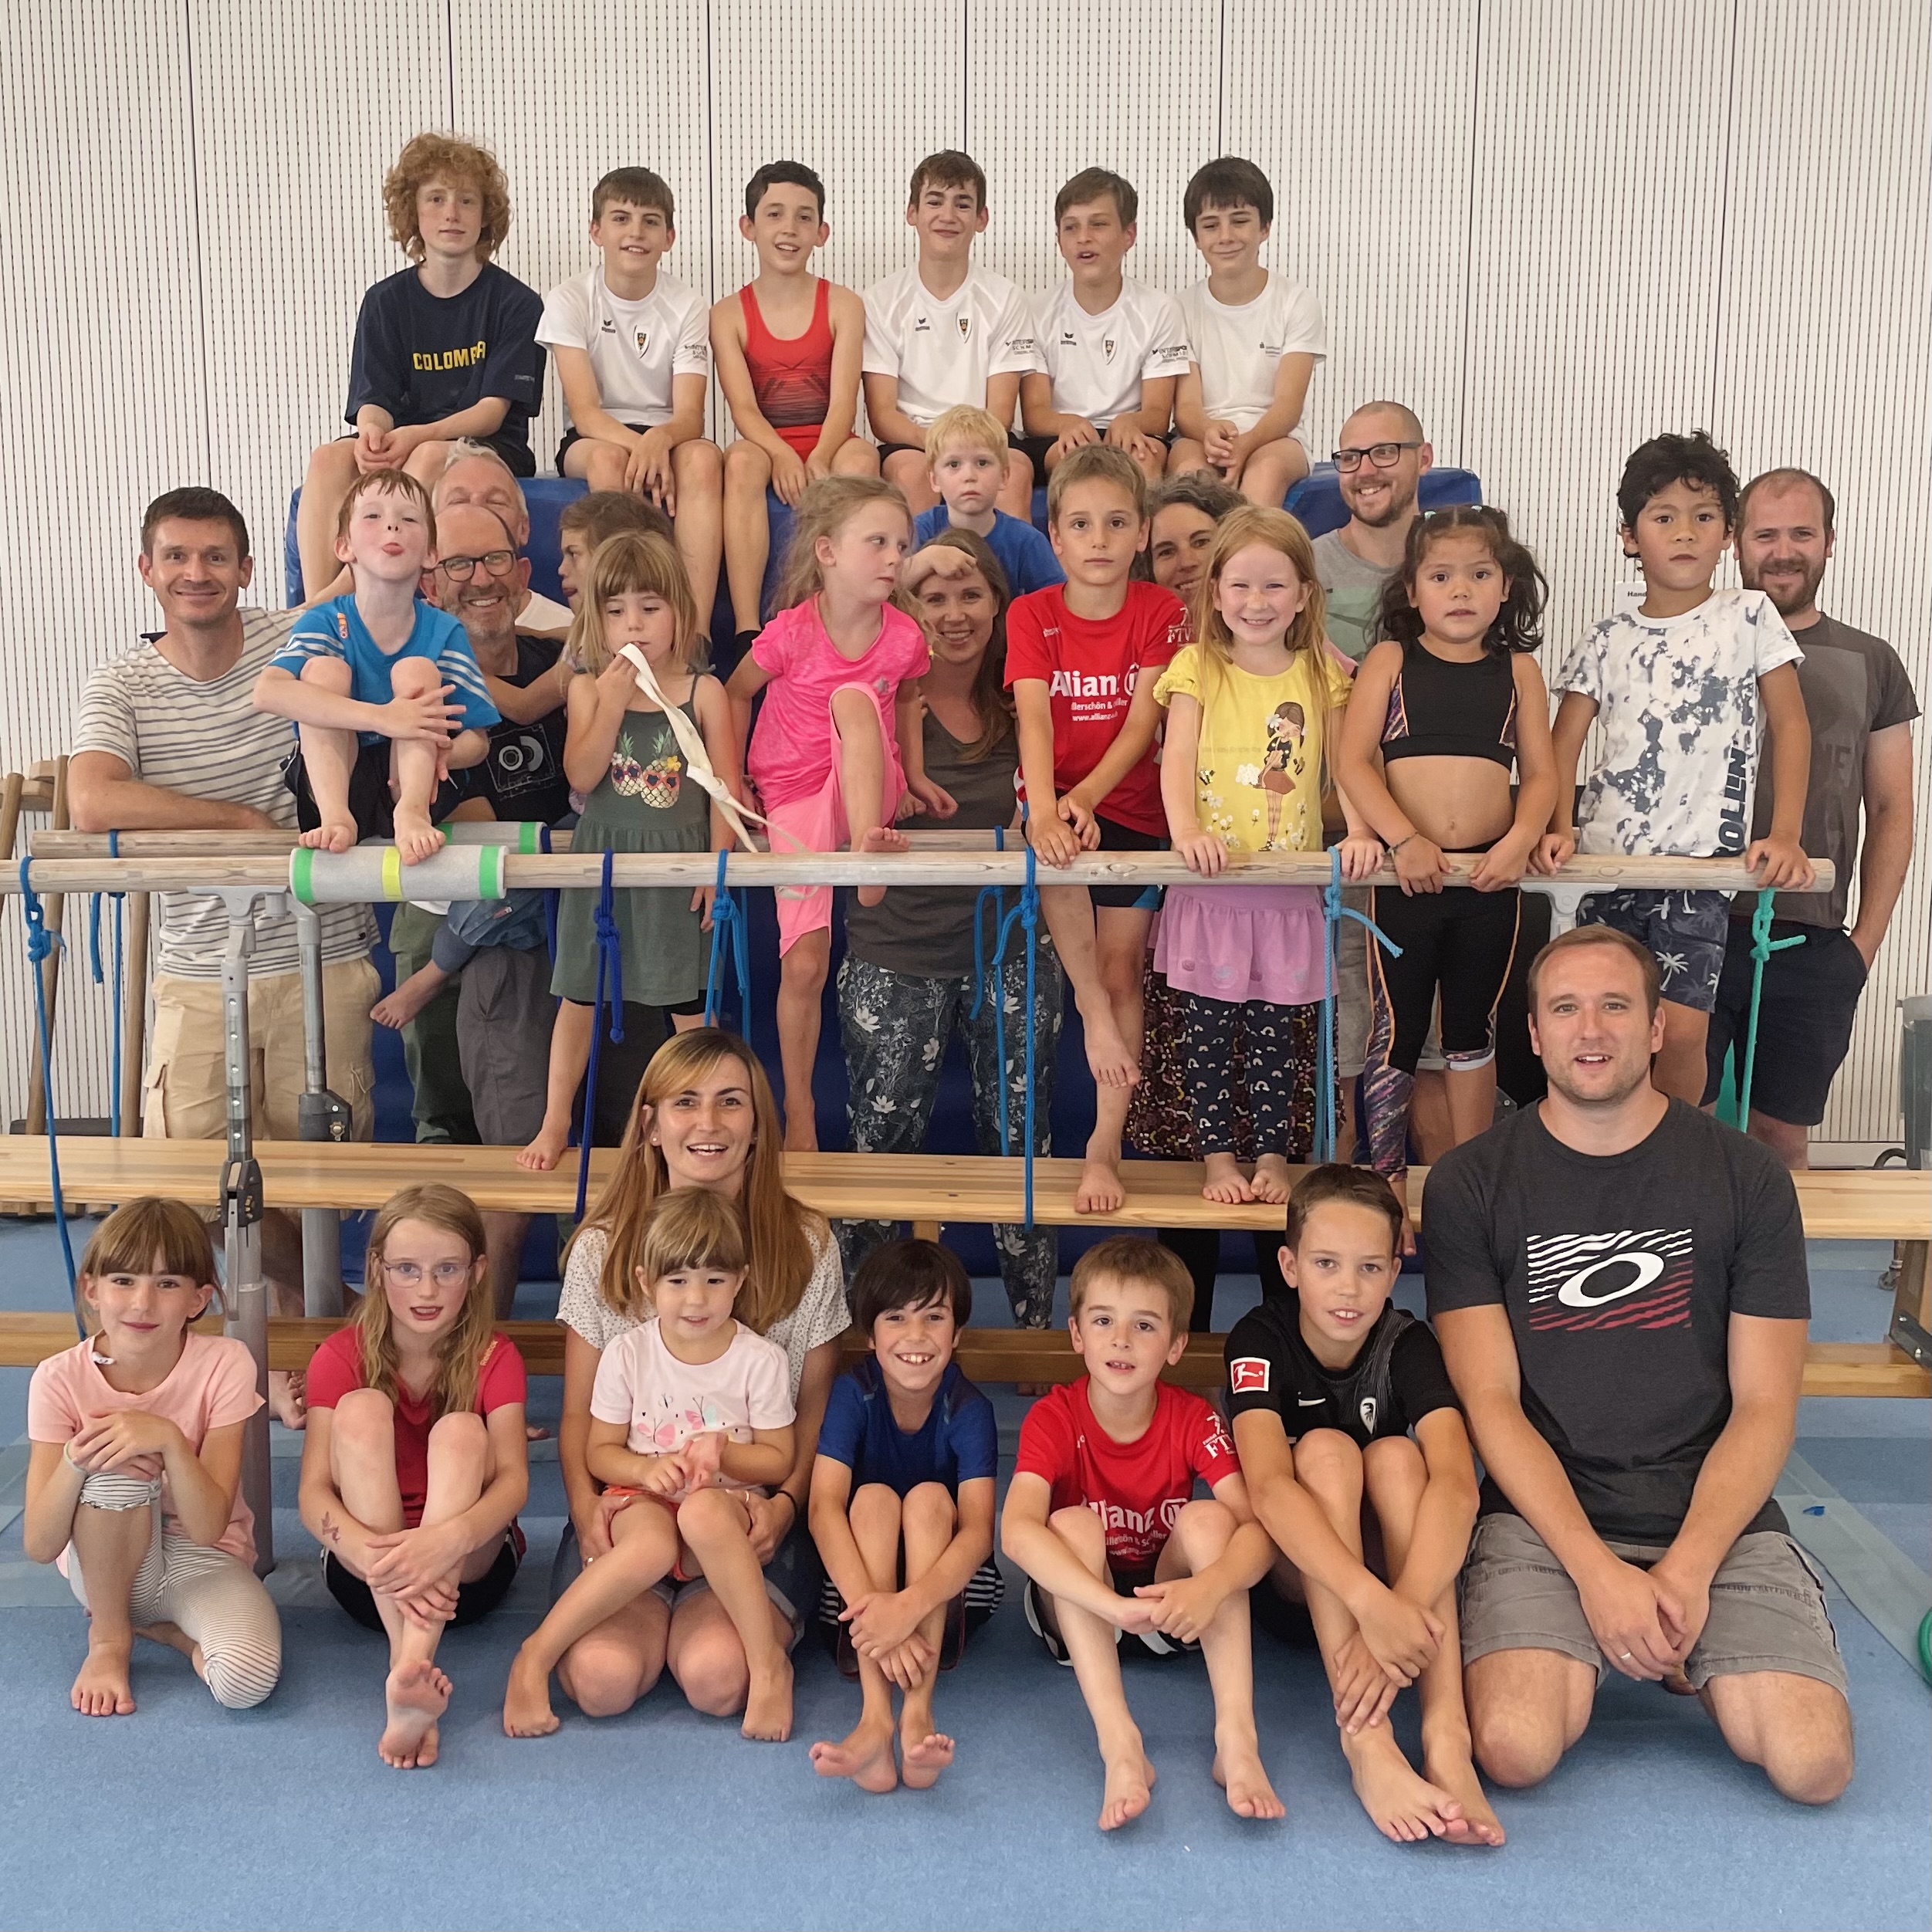 Gruppenbild der Teilnehmer bei dem Treffen der Herzkinder Bodensee beim Kinderherzsporttag